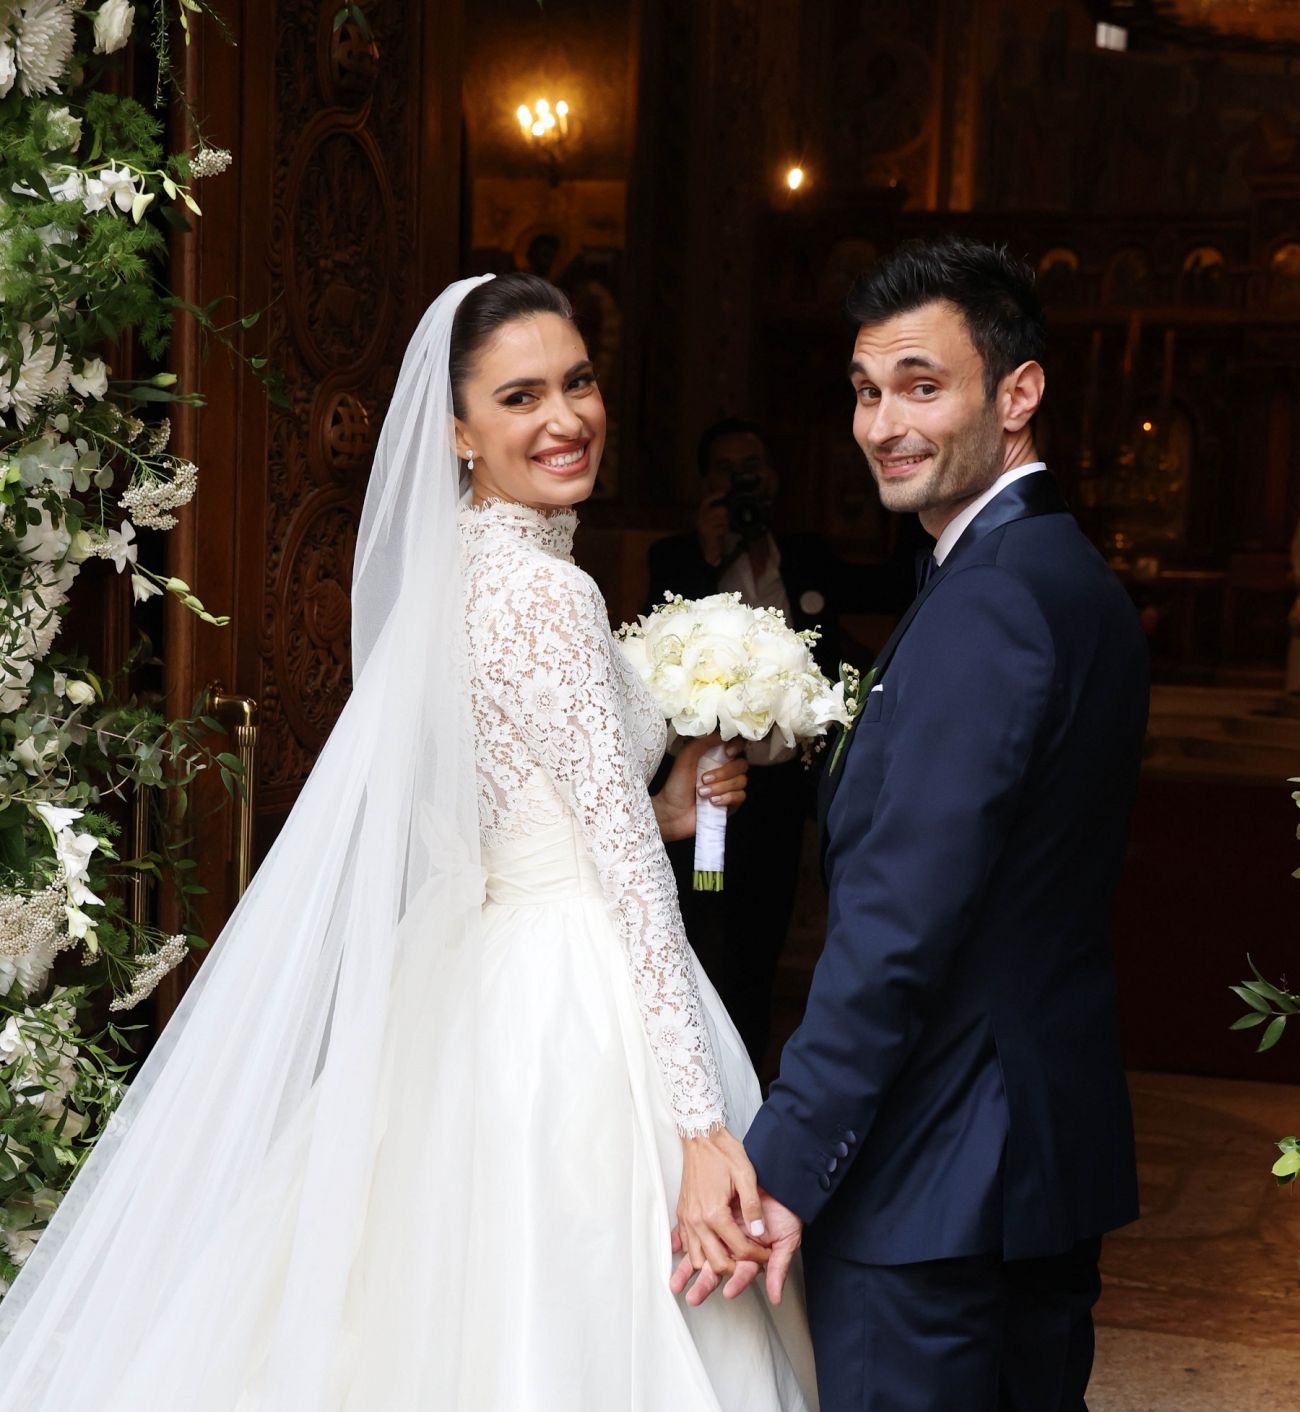 Άννα Πρέλεβιτς & Νικήτας Νομικός: Ο γάμος του αδερφού της Δούκισσας και ο τραγουδιστής – έκπληξη